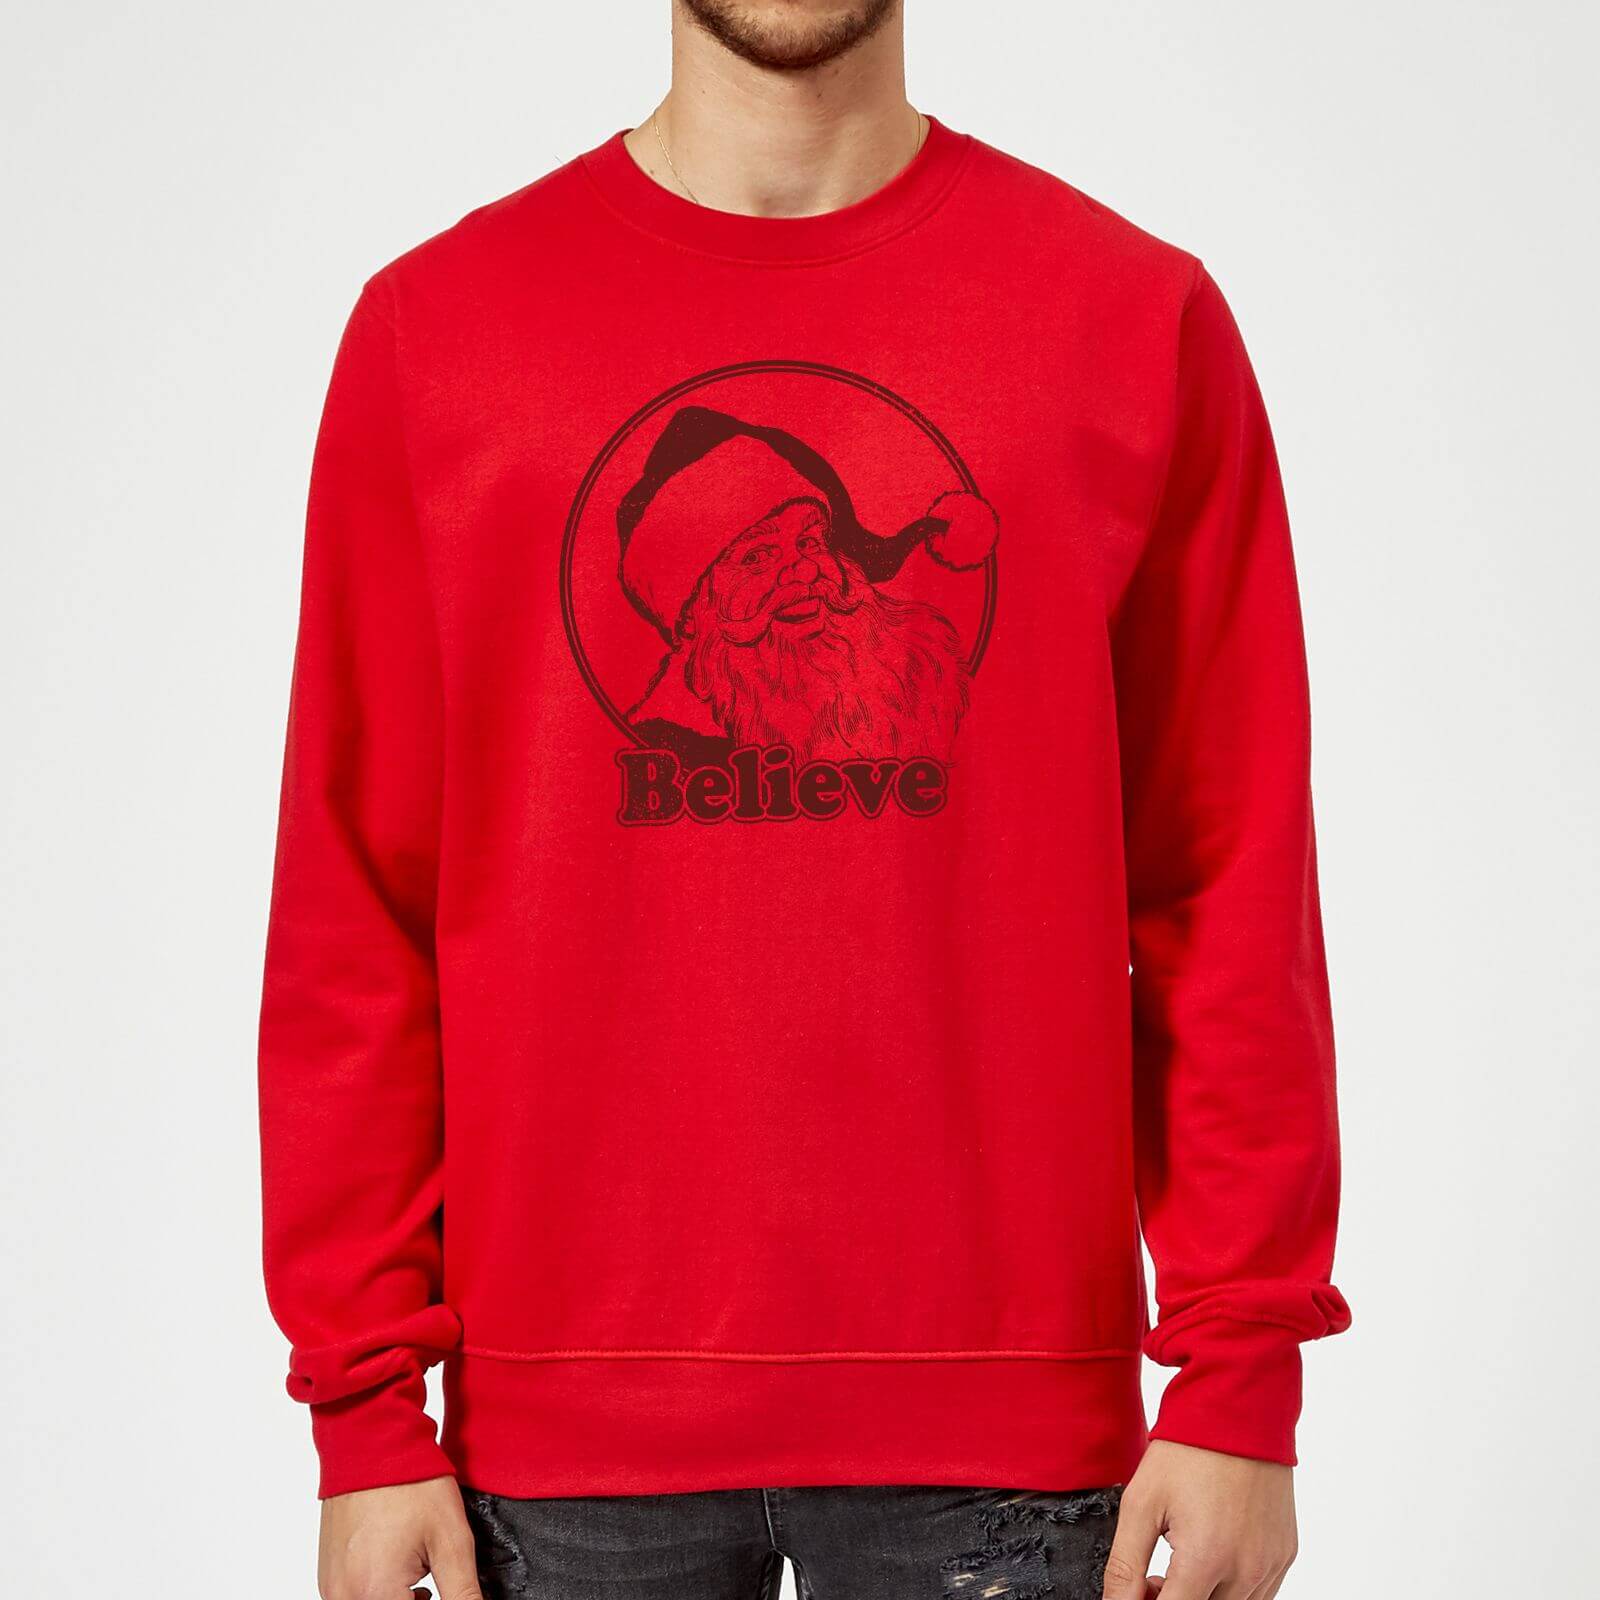 Believe Red Sweatshirt - Red - M - Red